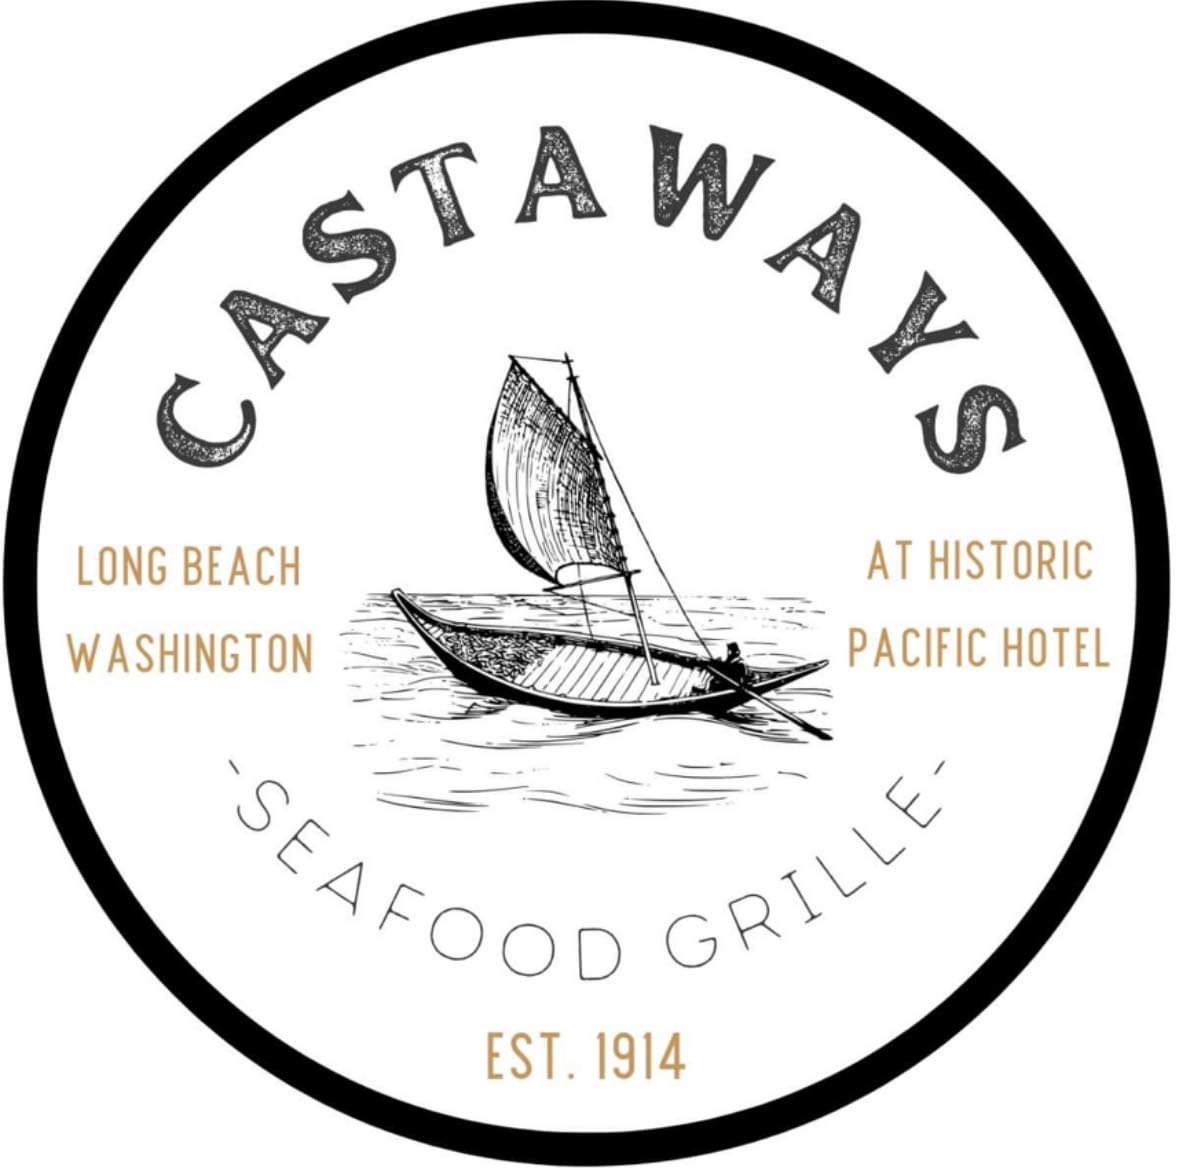 Castaways Seafood Grille